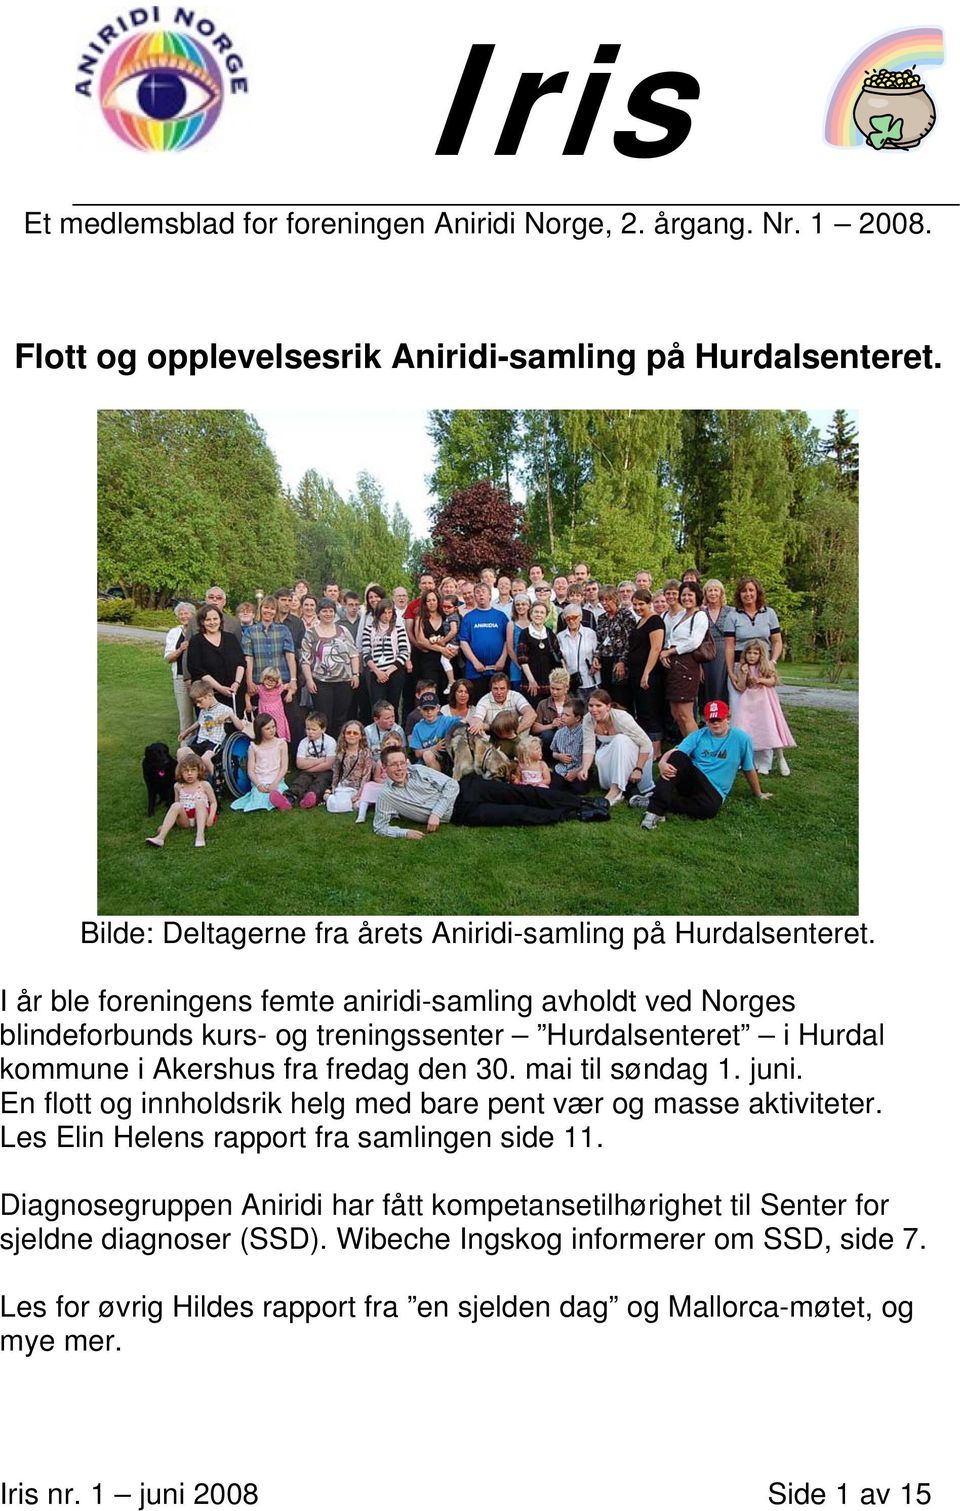 I år ble foreningens femte aniridi-samling avholdt ved Norges blindeforbunds kurs- og treningssenter Hurdalsenteret i Hurdal kommune i Akershus fra fredag den 30. mai til søndag 1. juni.